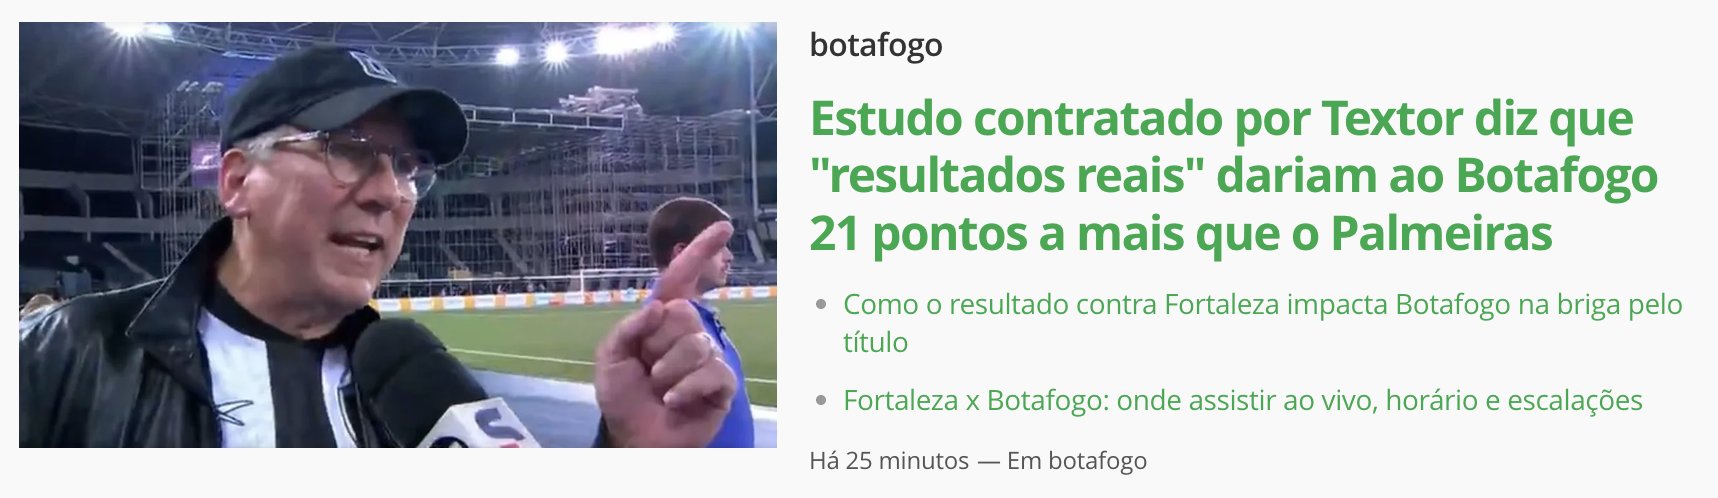 Estudo contratado por Textor diz que resultados reais dariam ao Botafogo  21 pontos a mais que o Palmeiras, botafogo